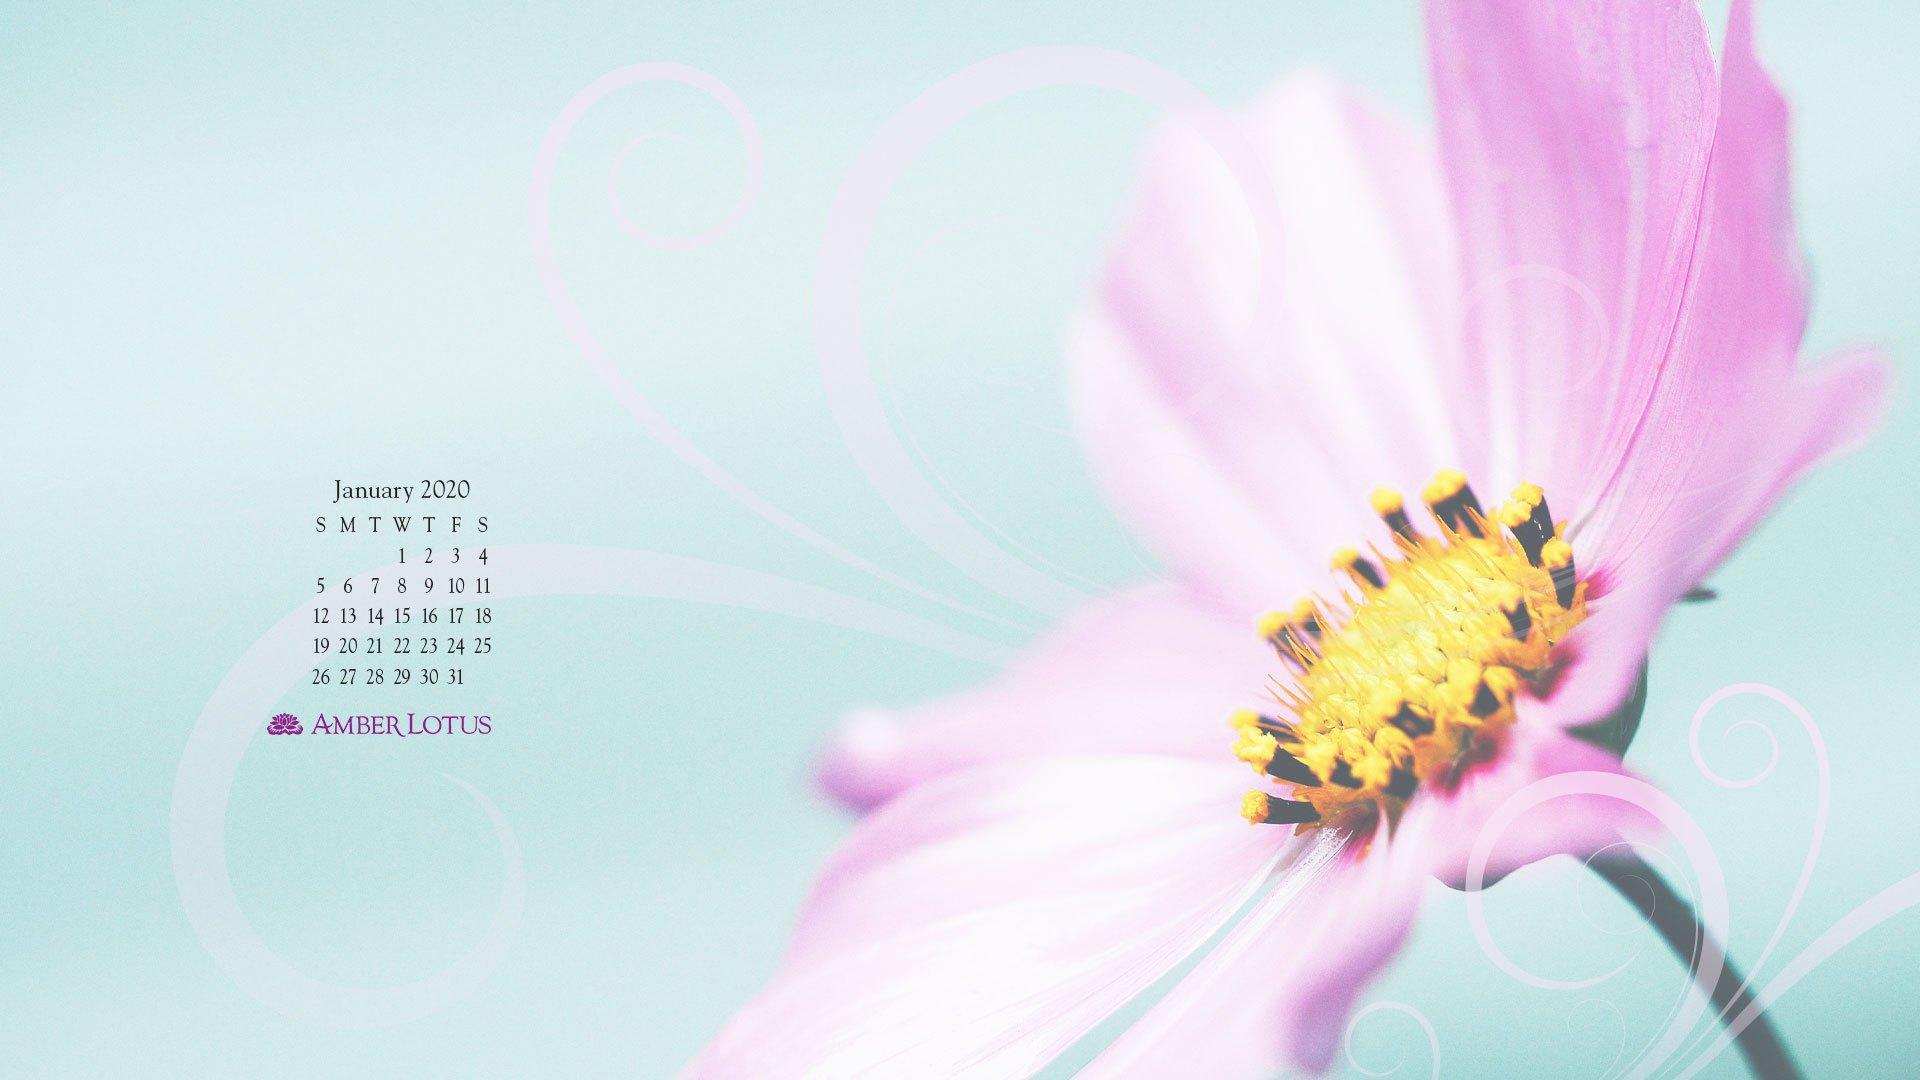 Desktop Wallpaper Calendar